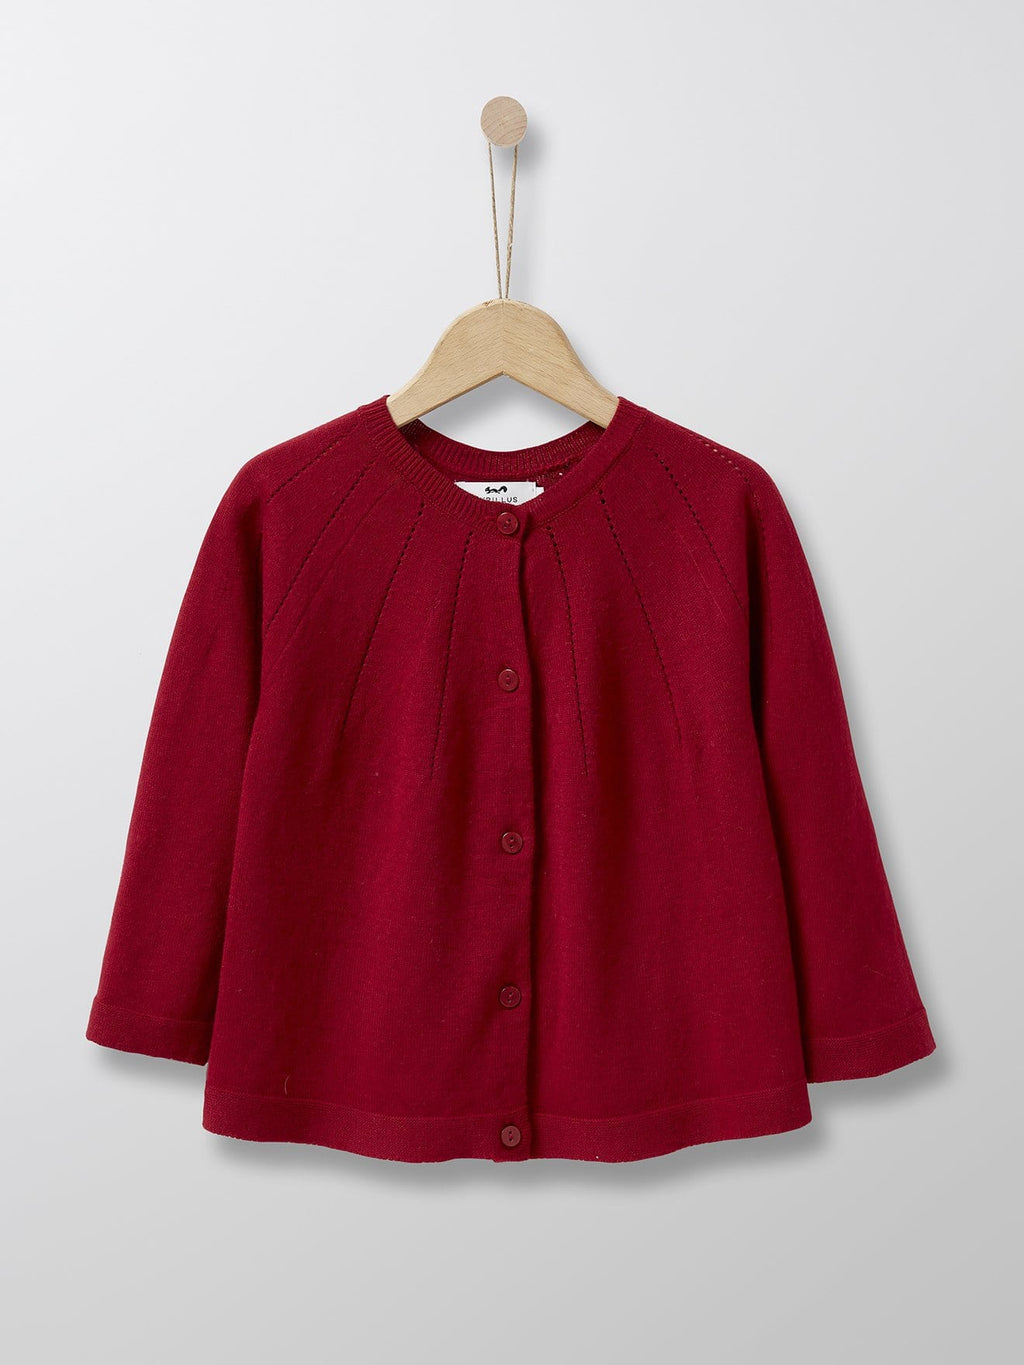 Cyrillus Paris | Girl's Pointelle Cardigan | Cotton + Cashmere | Dark Red | 3Y, 4Y, 6Y